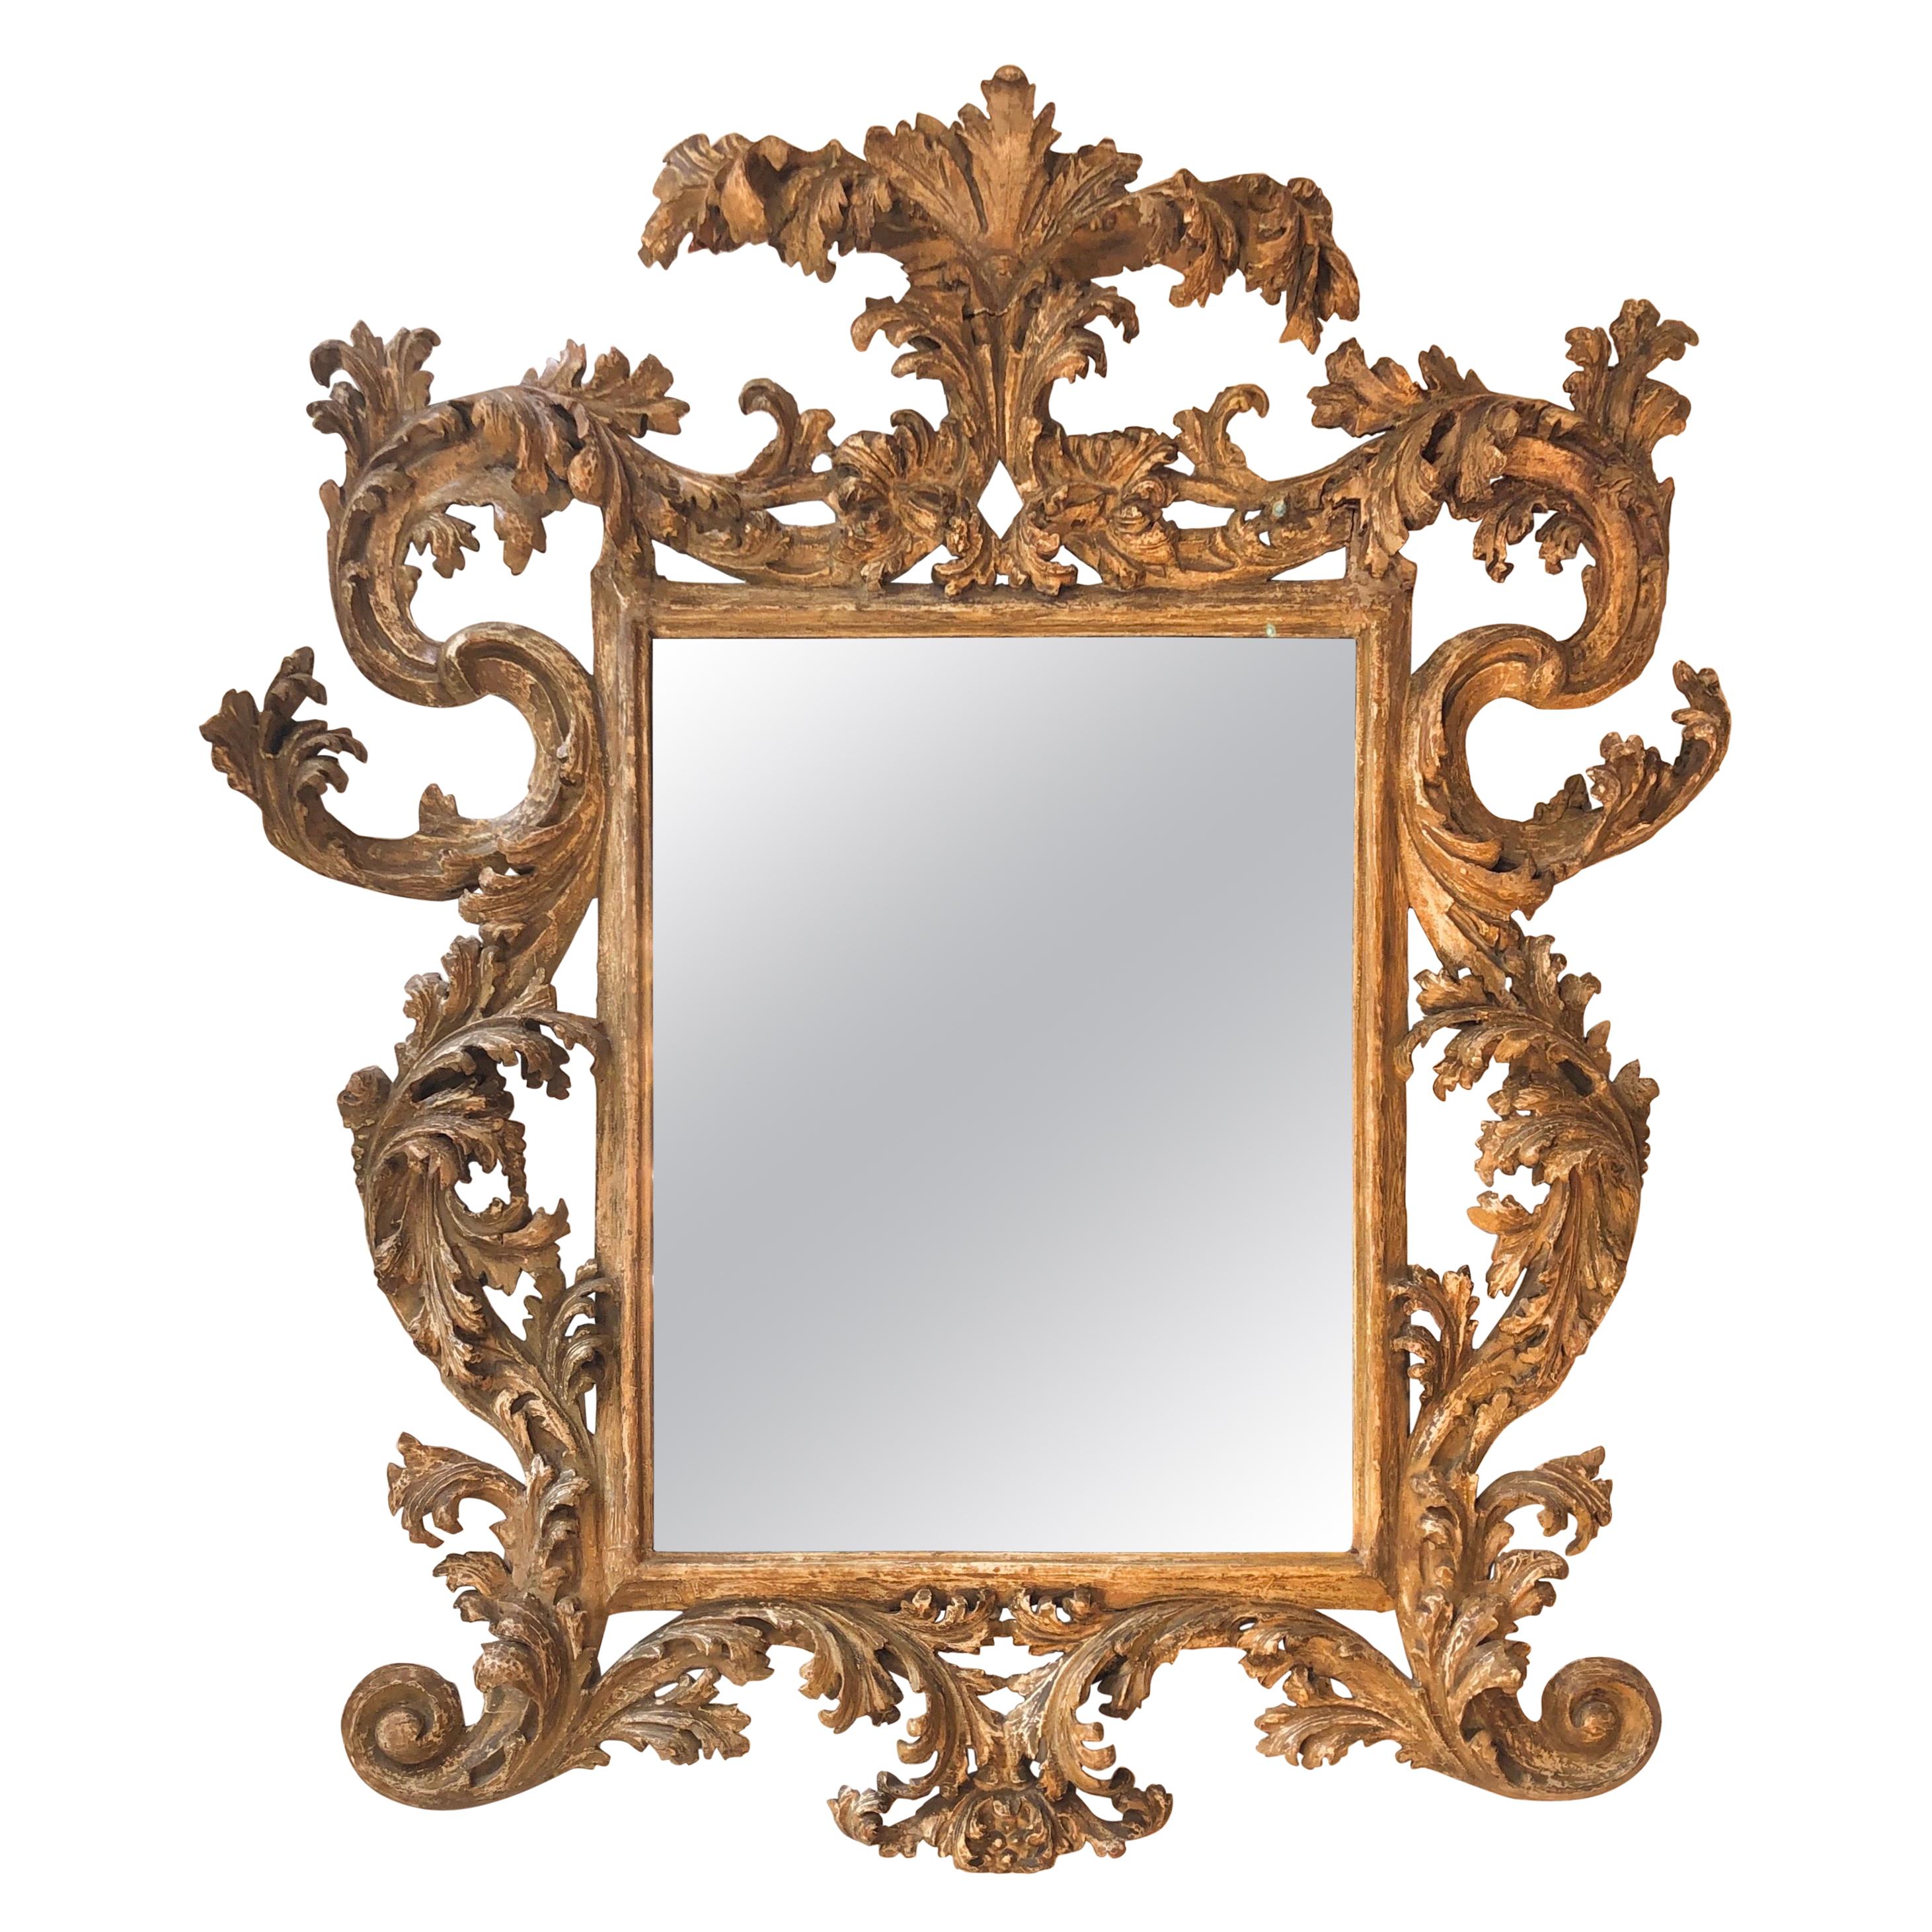 18th Century Florentine Mirror with an Elegant Worn Finish